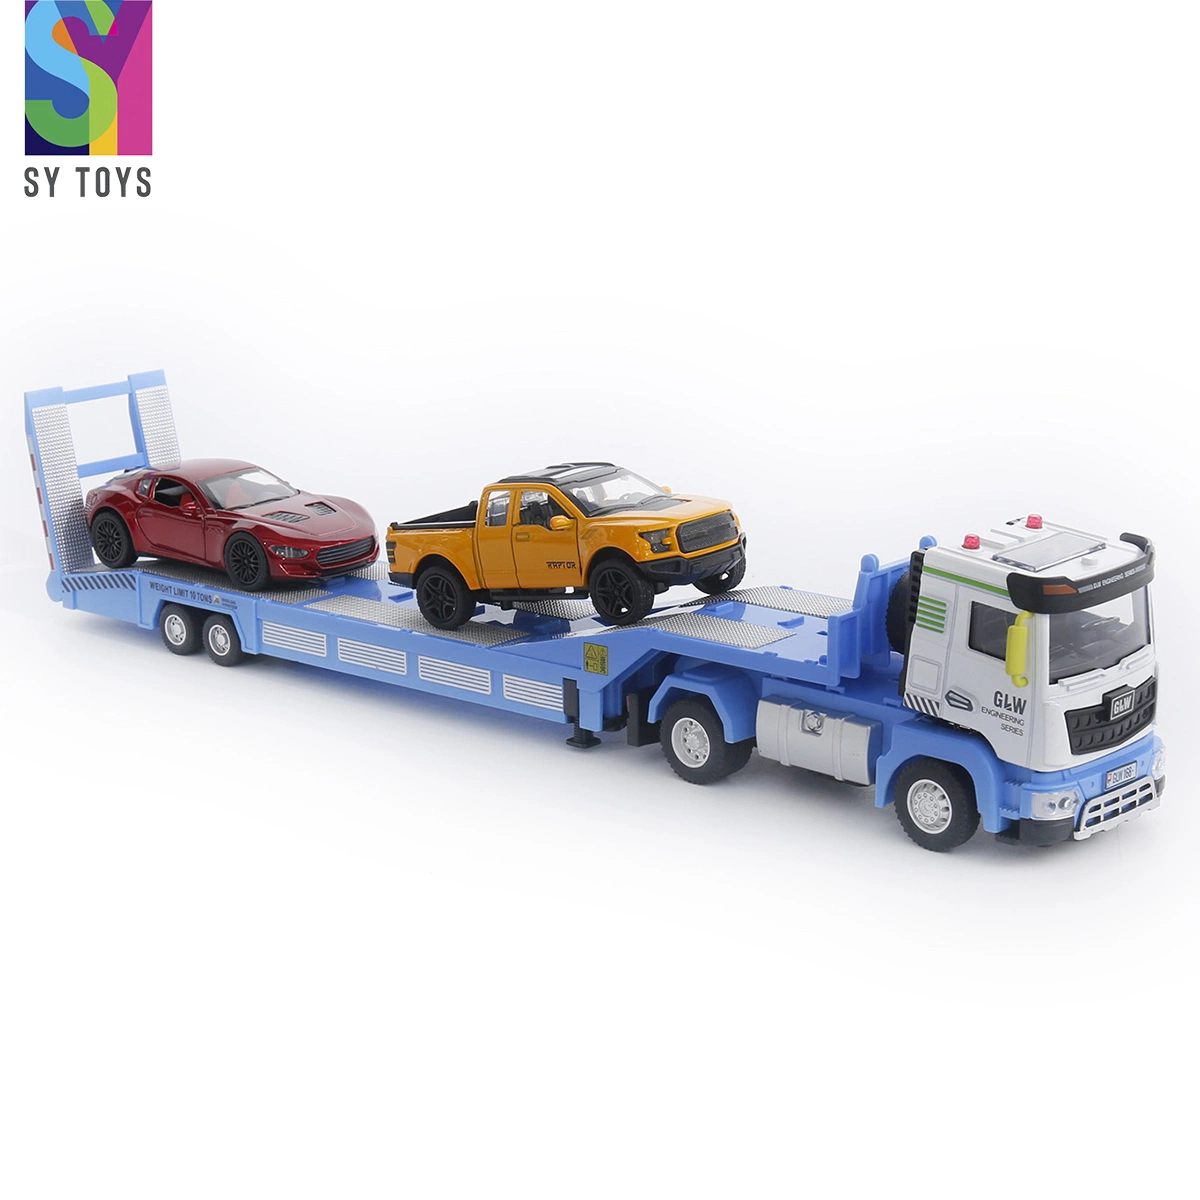 Sy jouets de la Chine de gros camion jouet moulé sous pression pour la vente de matériel de construction en alliage de roue libre de transporteur de voitures jouets moulé de remorque